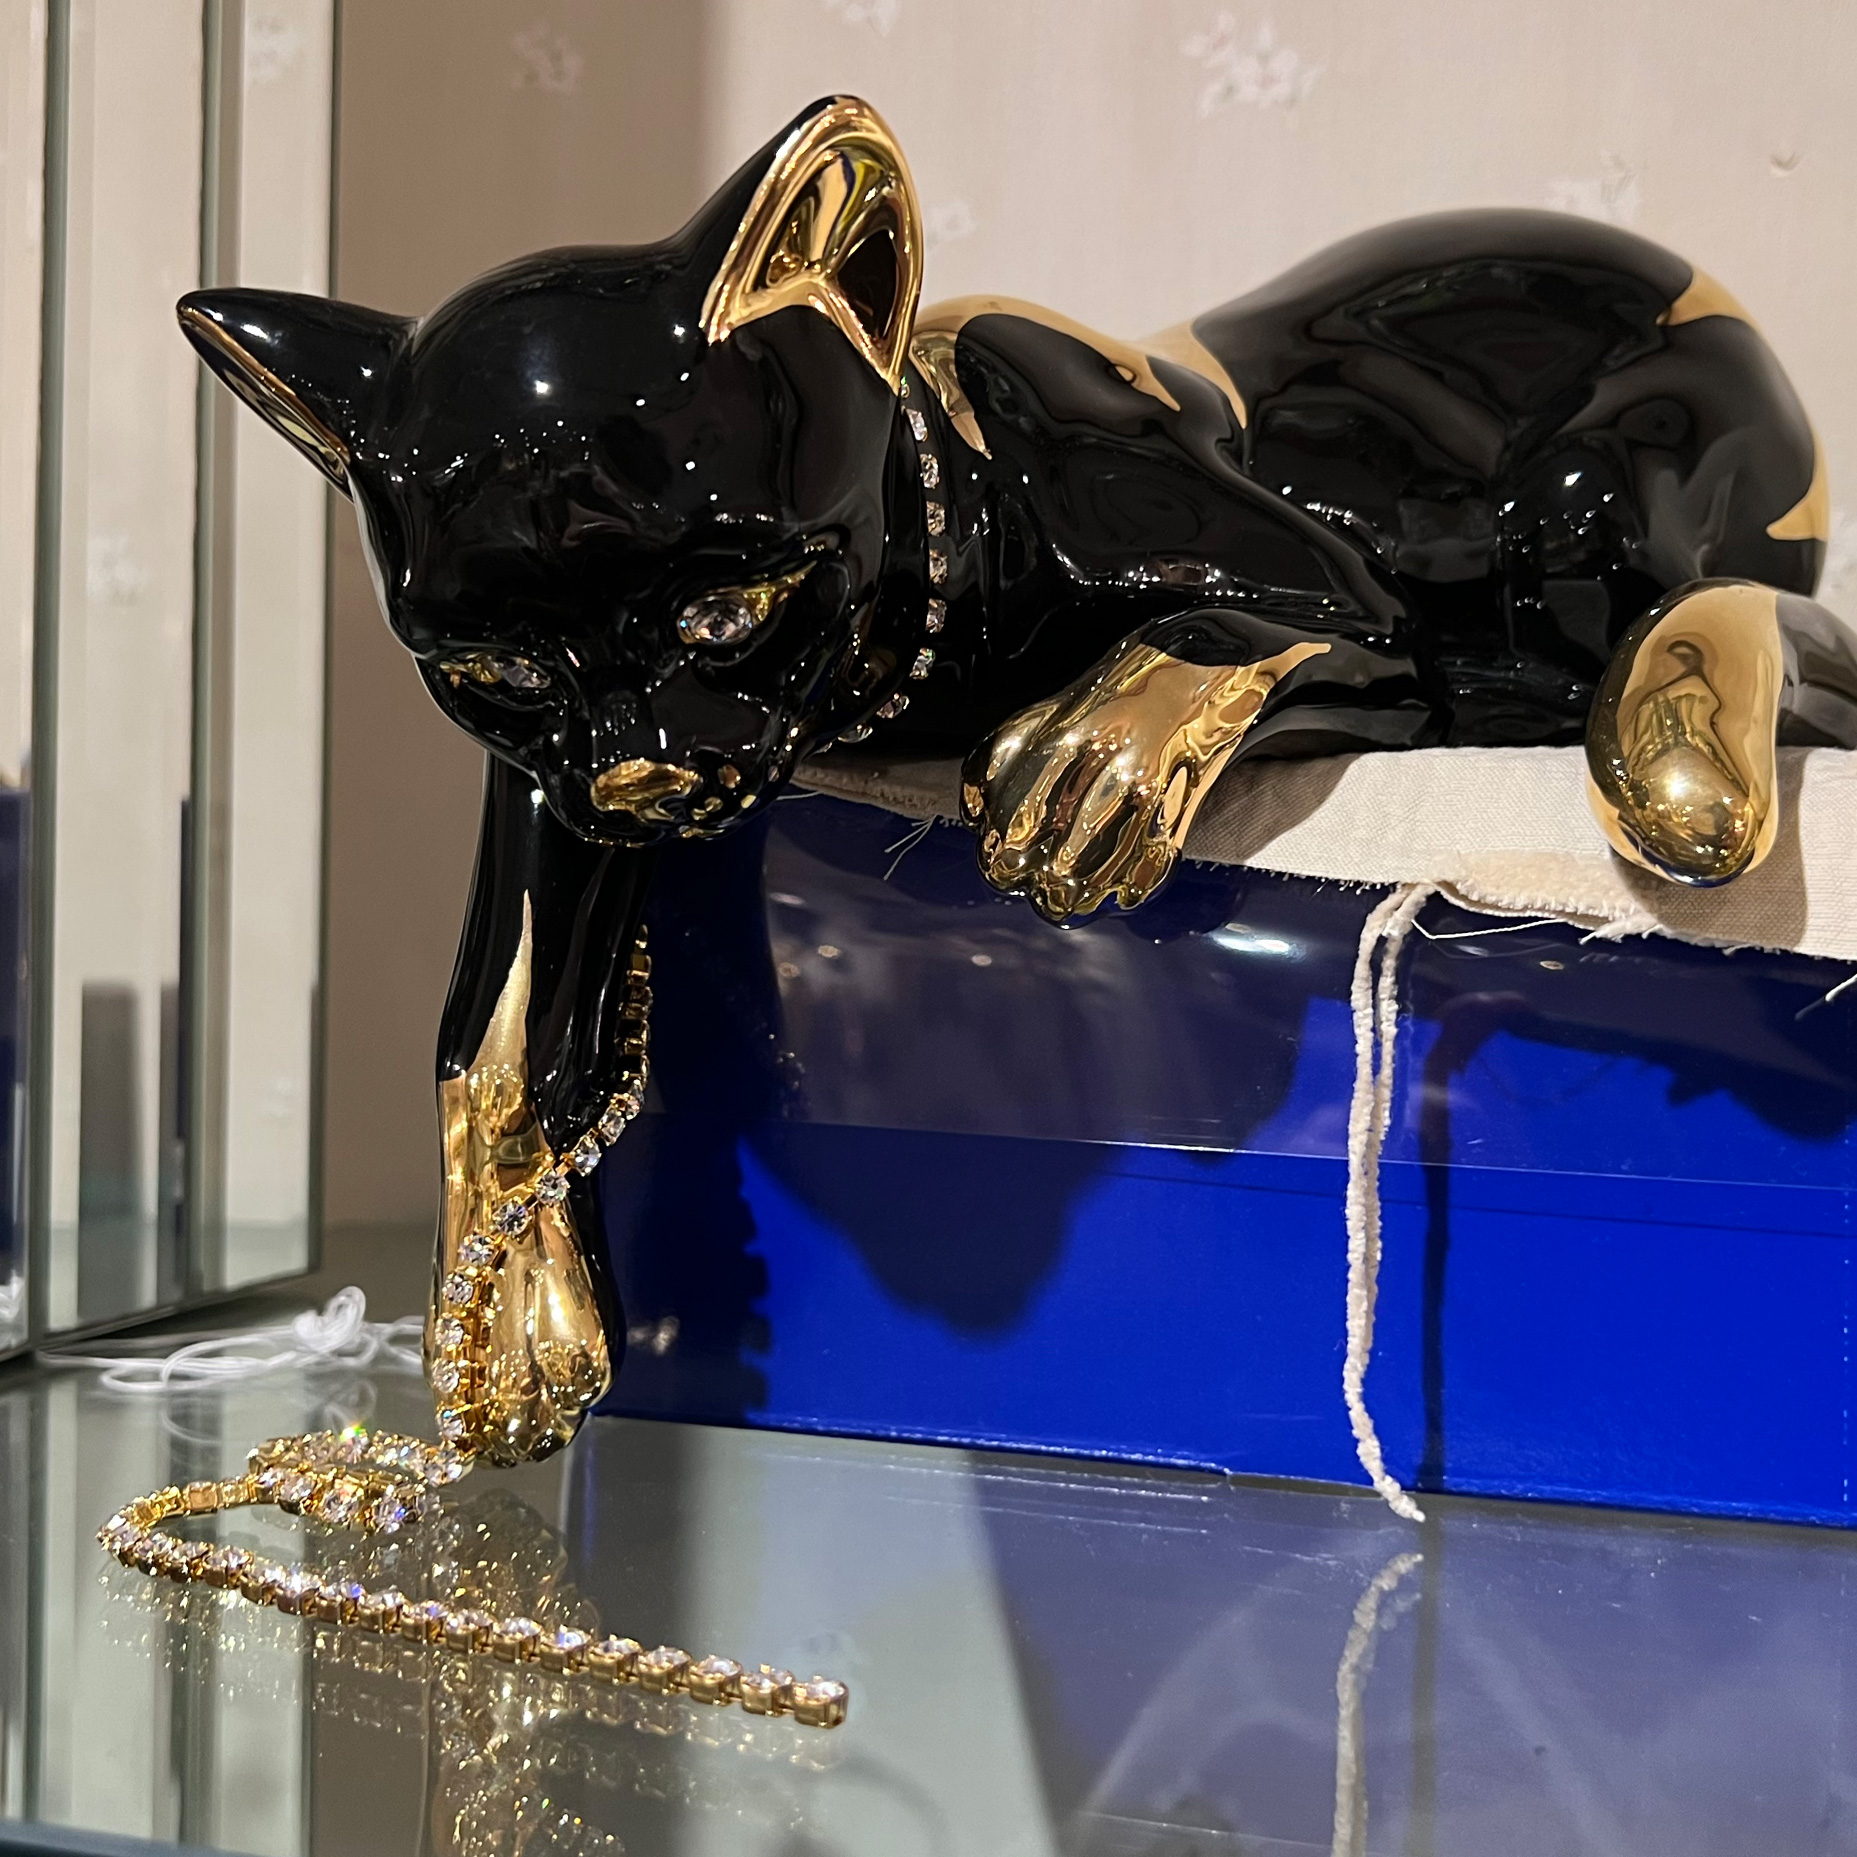 正規品送料無料 猫の置物 ブラック ゴールド 黒猫の置物 ネコのインテリアオブジェ 動物の置物 輸入雑貨 イタリア製 Pe03 Gr